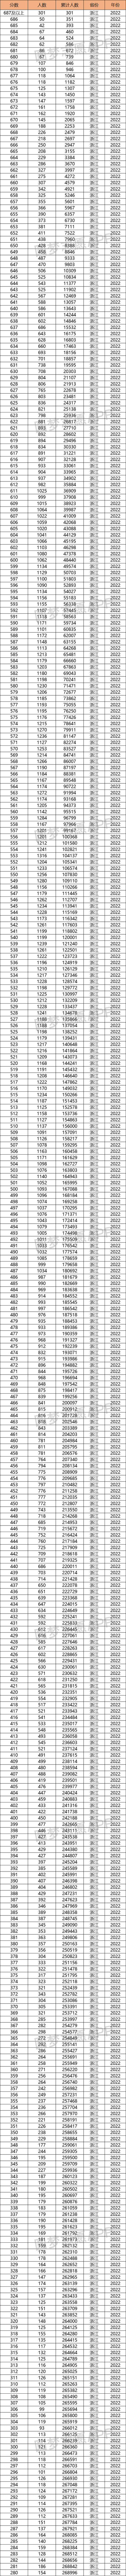 2022浙江高考一分一段排名表-浙江高考位次表2022